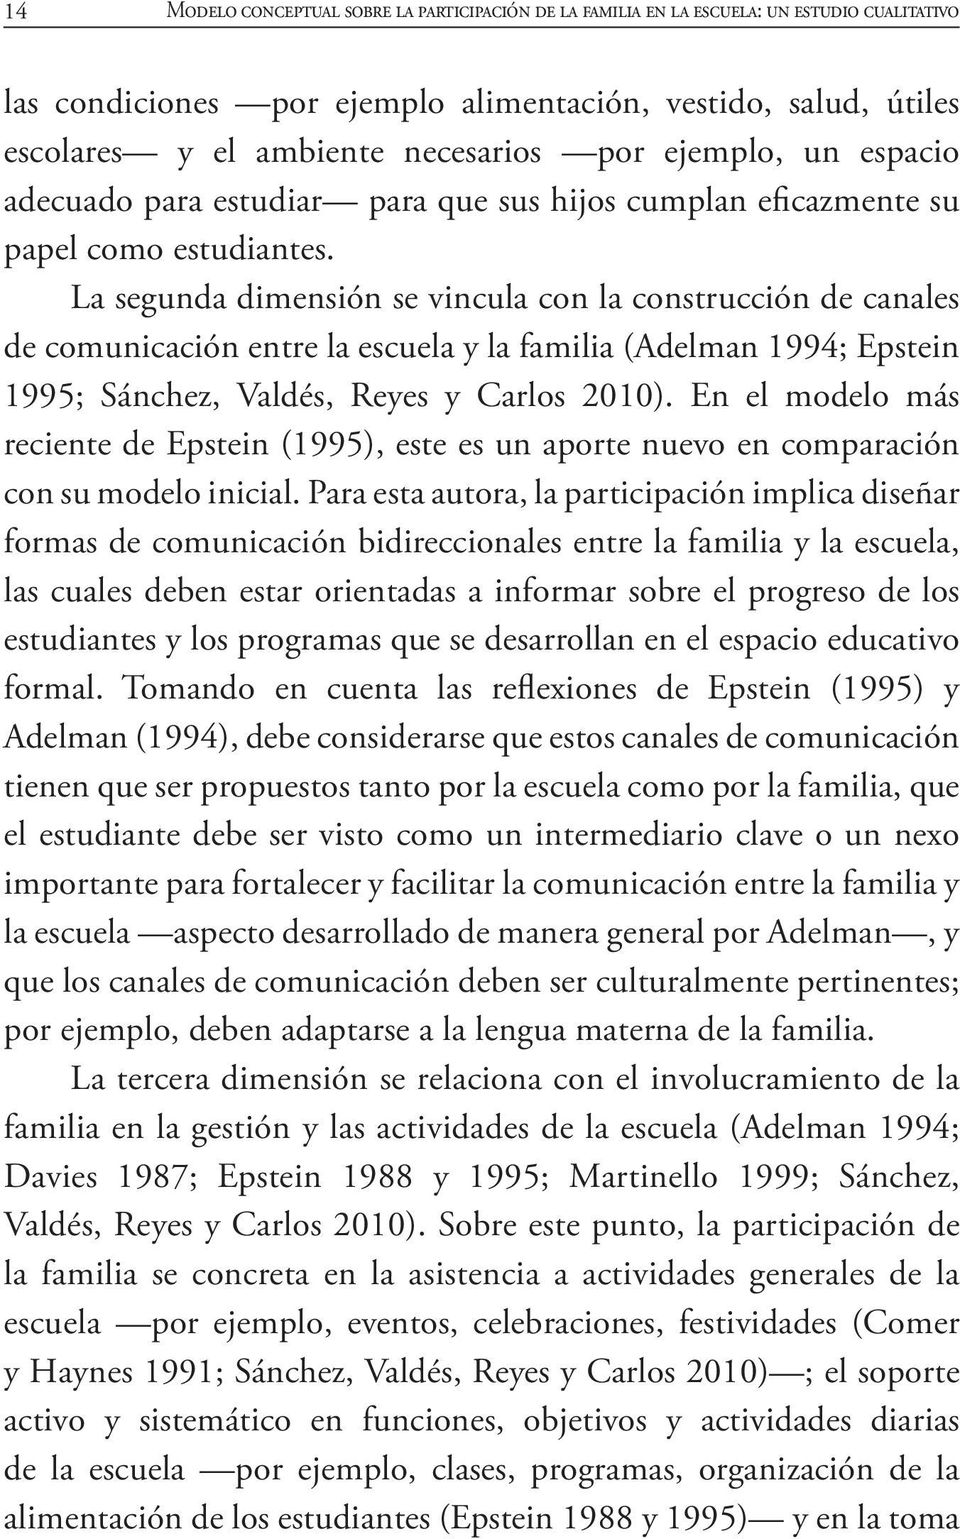 La segunda dimensión se vincula con la construcción de canales de comunicación entre la escuela y la familia (Adelman 1994; Epstein 1995; Sánchez, Valdés, Reyes y Carlos 2010).